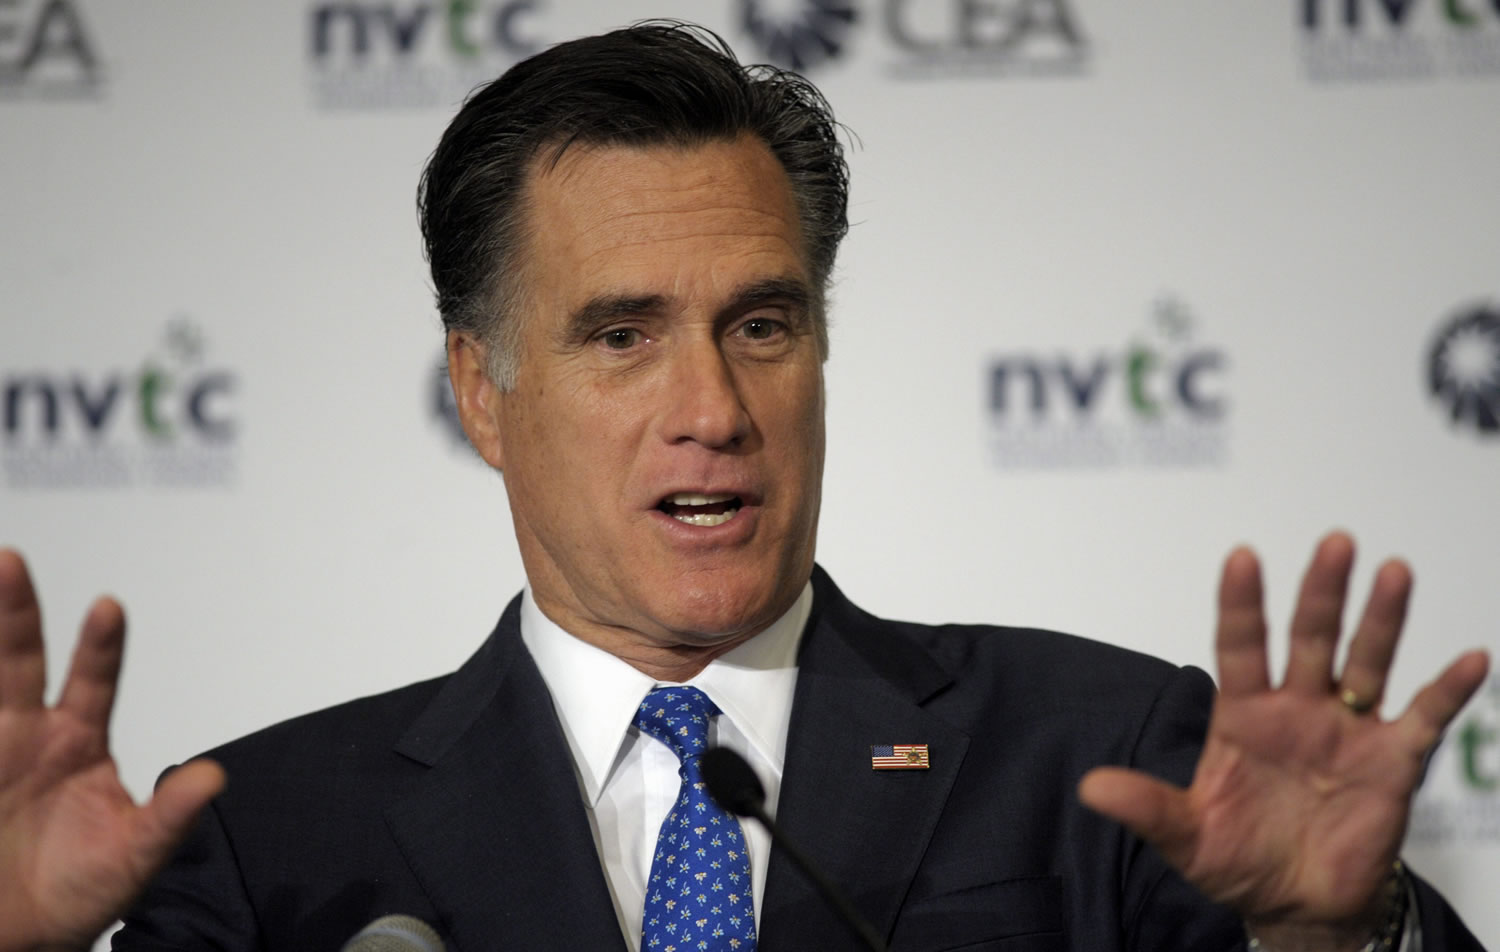 Mitt Romney, Won 39 percent of votes in Maine